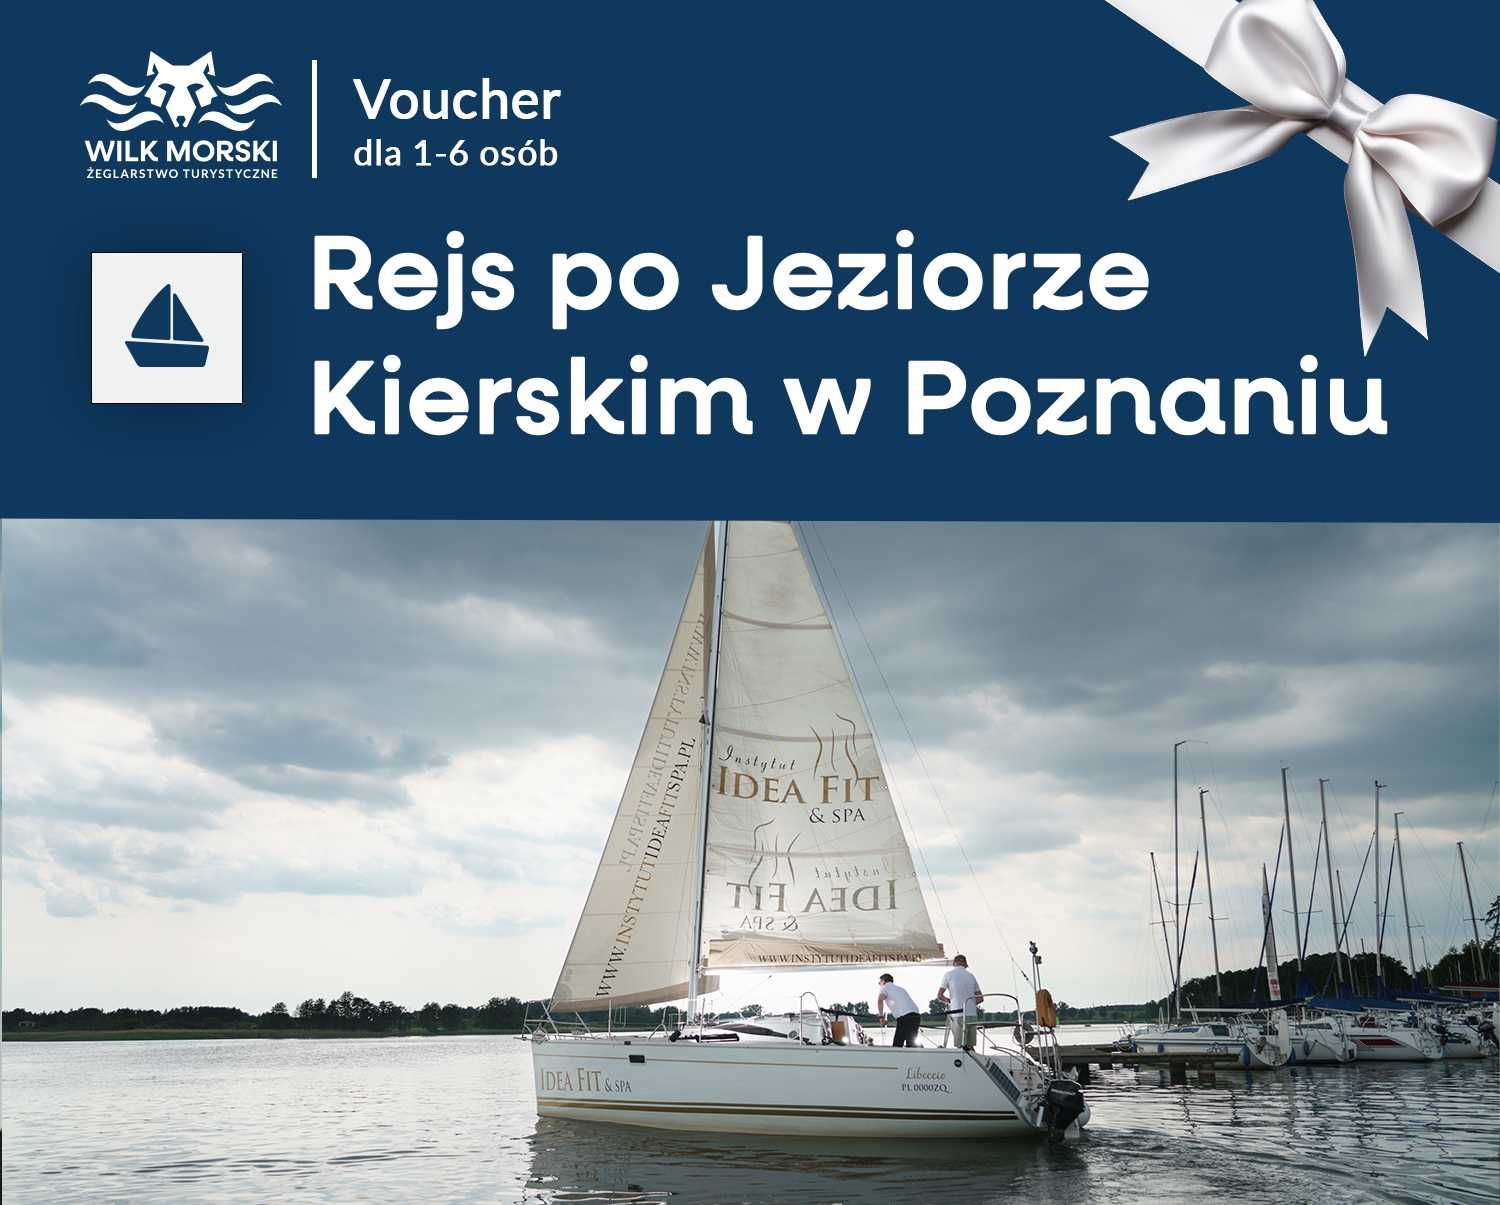 BON VOUCHER / REJS jachtem po Jeziorze Kierskim w Poznaniu (1-6 osób)